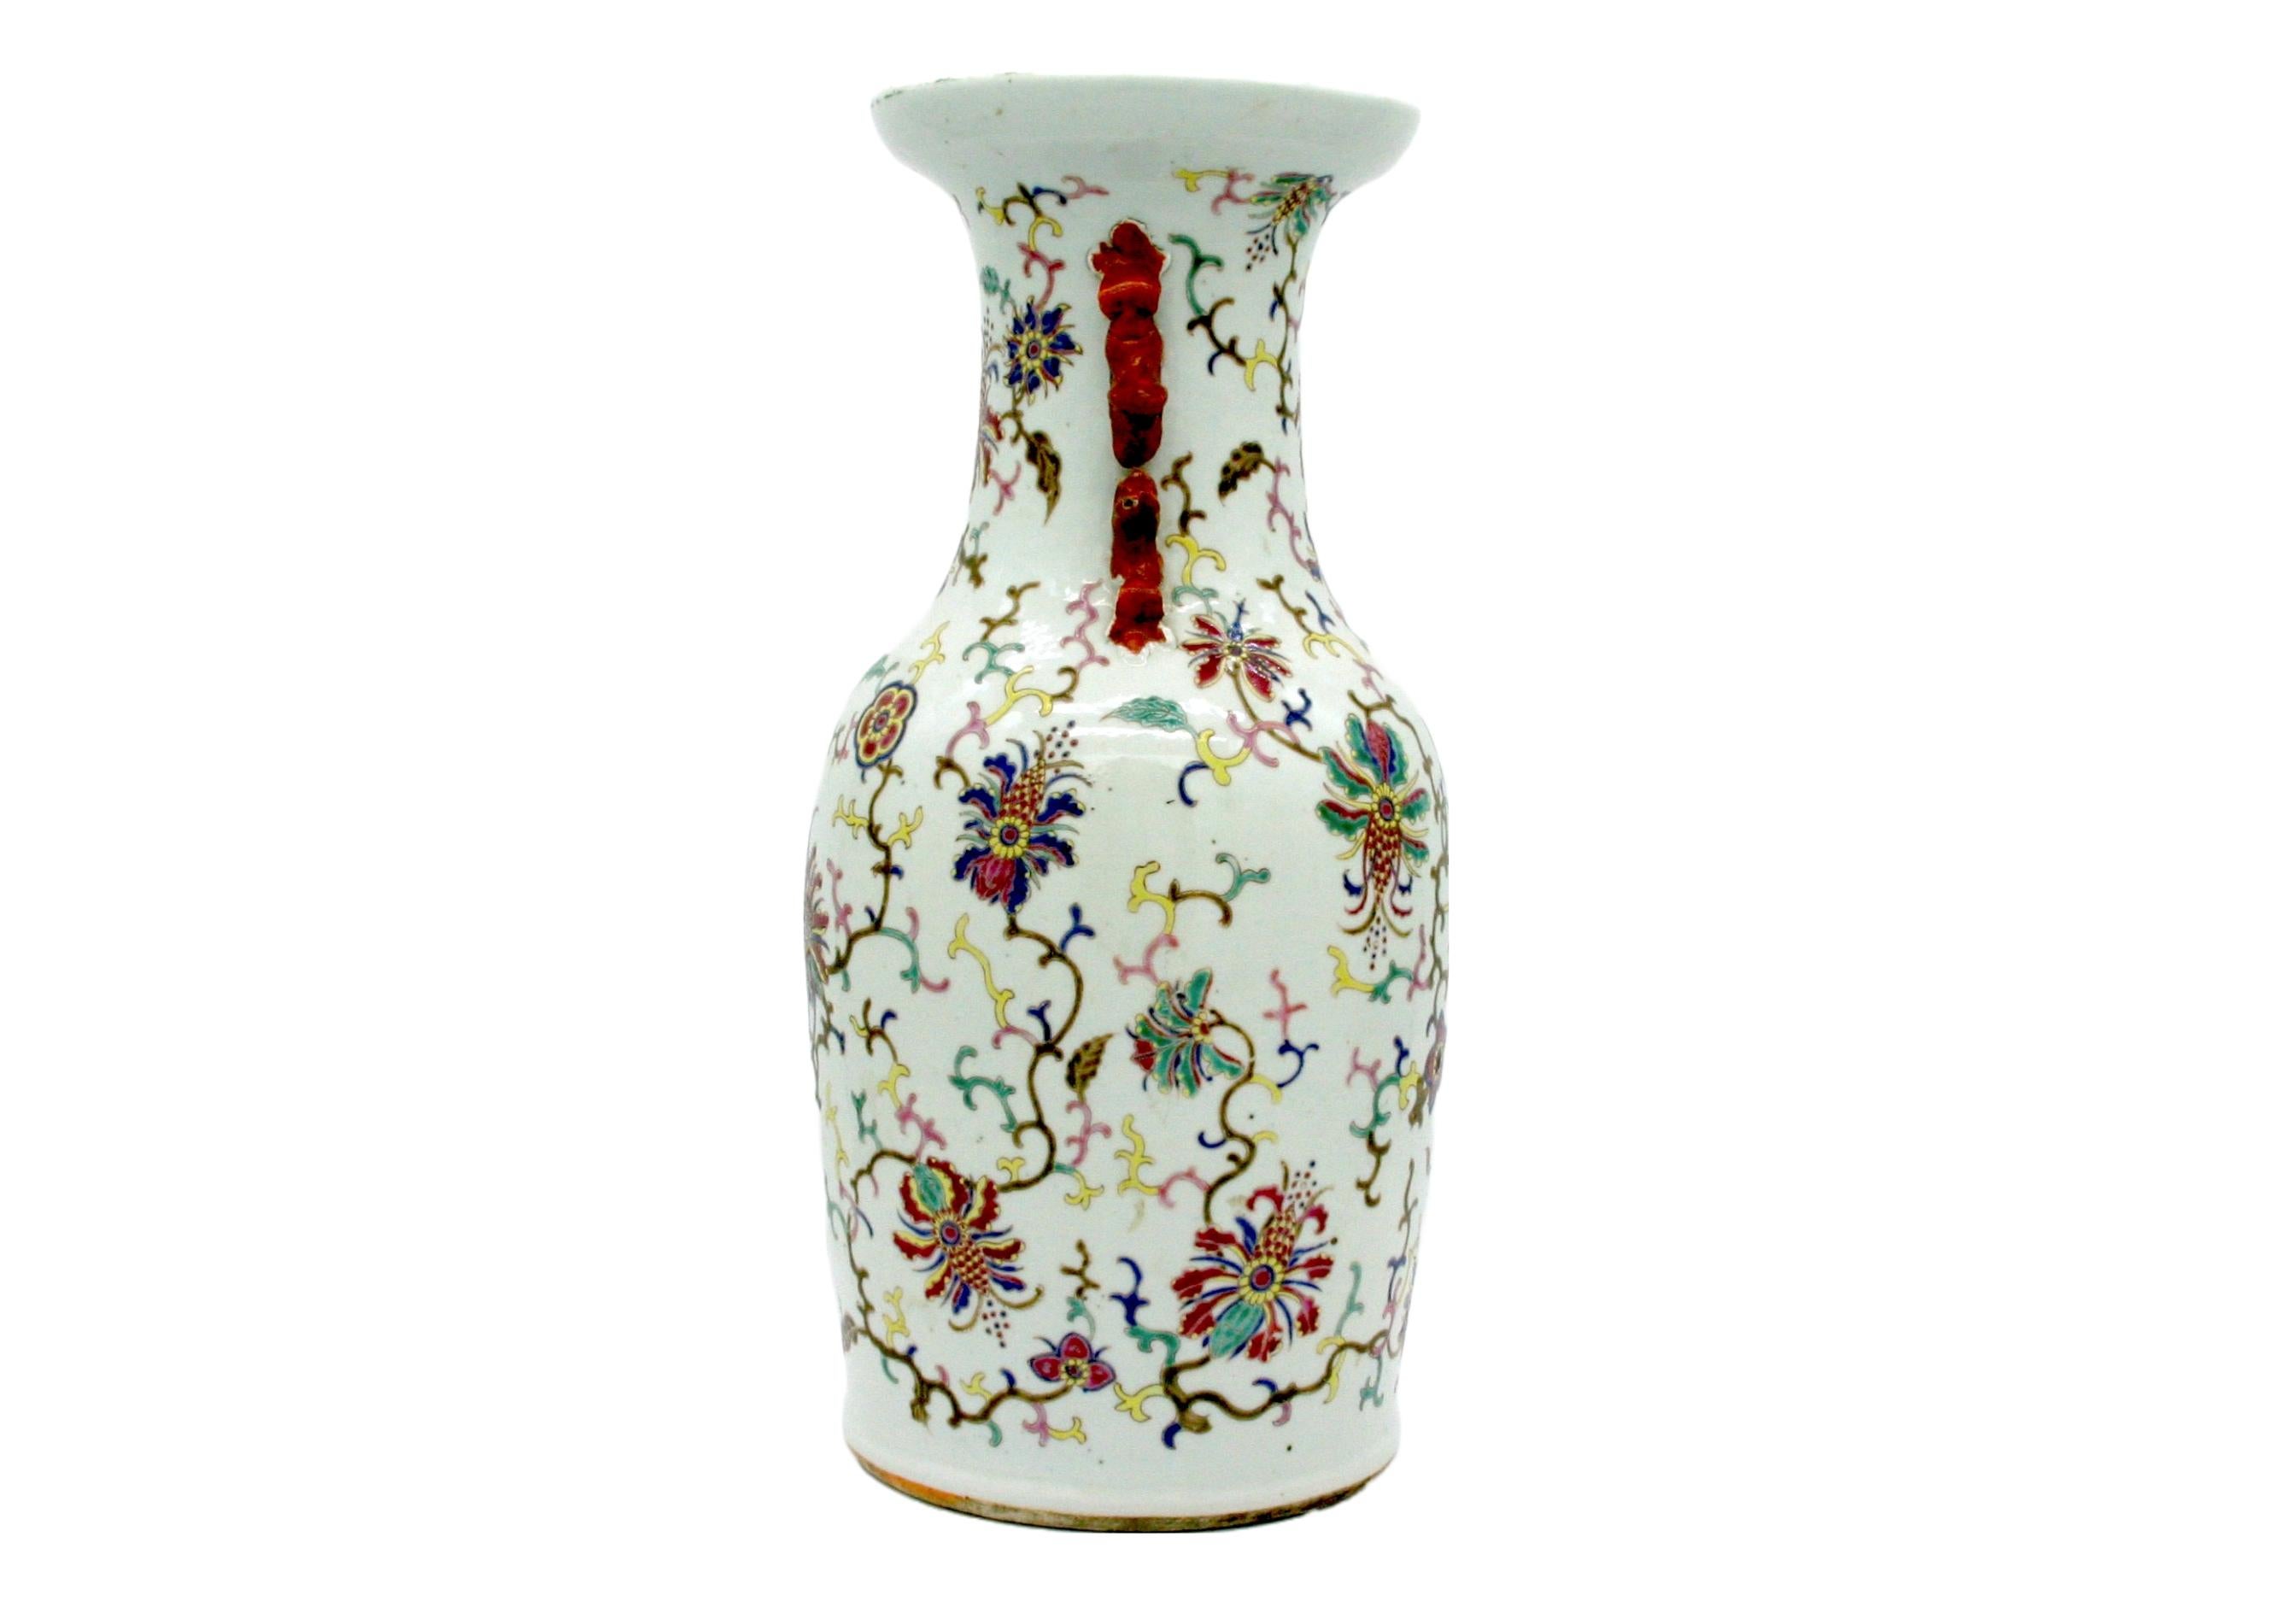 Ende des 19. Jahrhunderts handbemalte und handgefertigte dekorative chinesische Porzellanurne / Vase mit floralen Außendetails und seitlichen Henkeln. Die Vase ist in sehr gutem Zustand. Leichte alters- und gebrauchsbedingte Gebrauchsspuren. Das